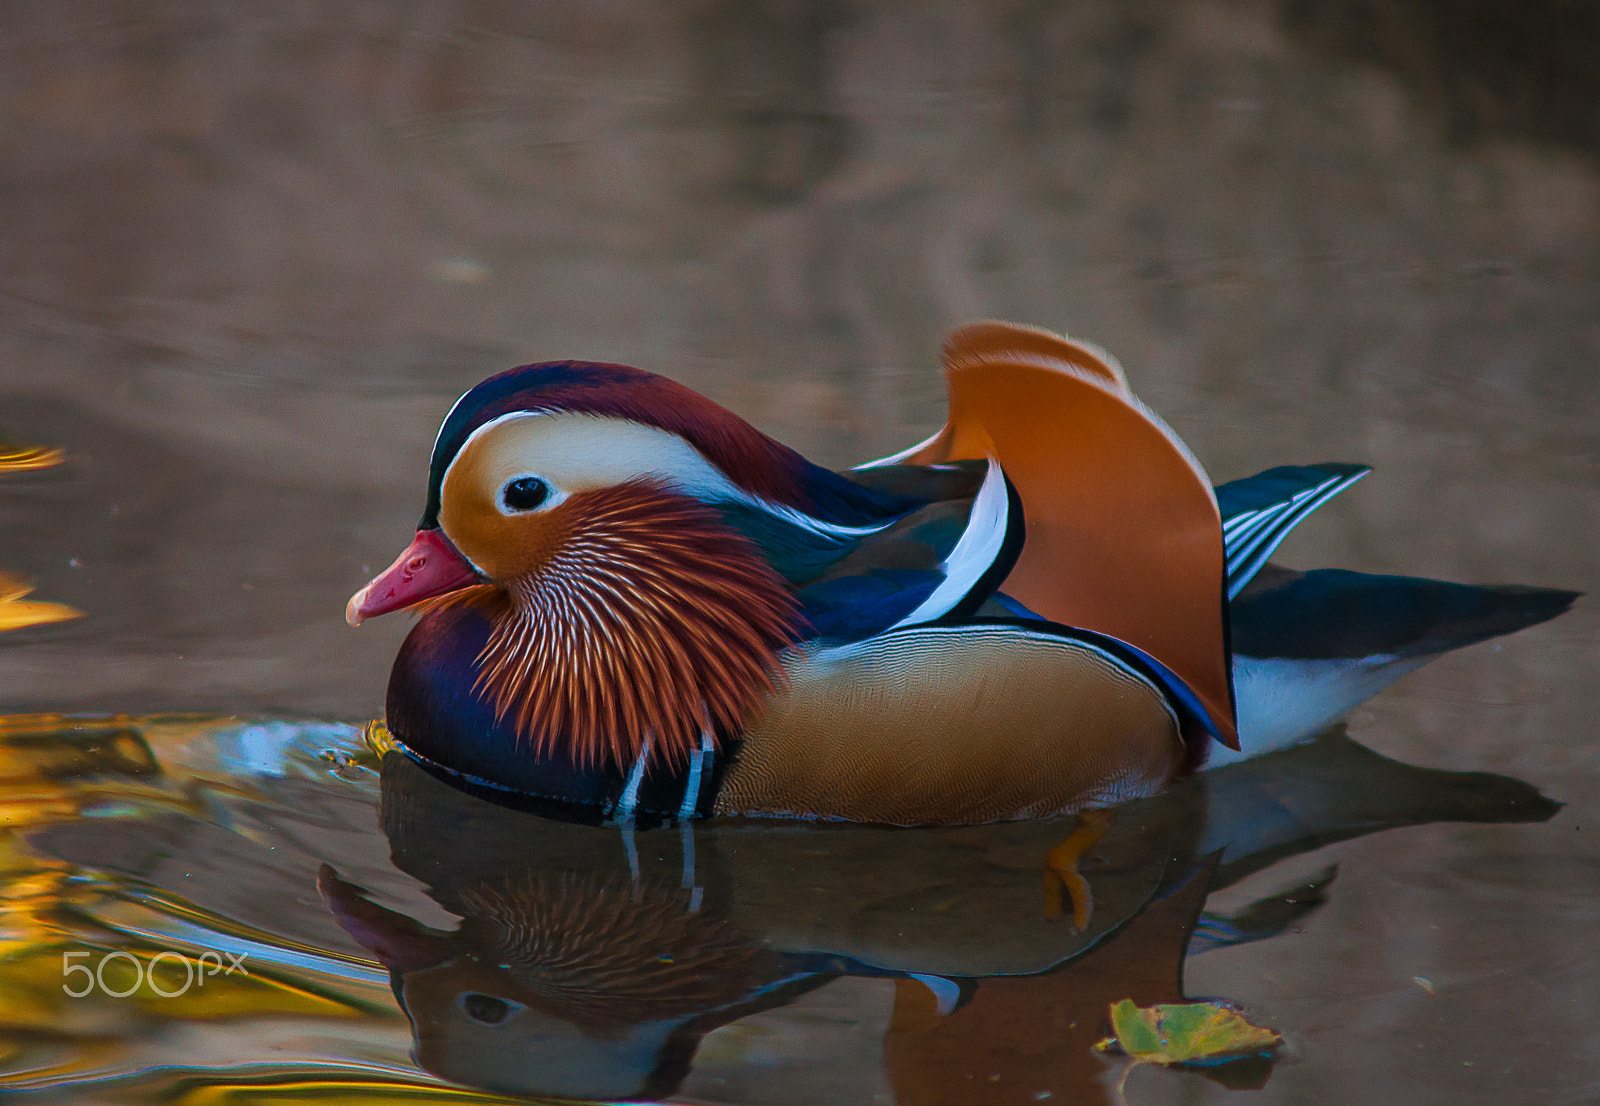 AF Zoom-Nikkor 70-210mm f/4 sample photo. Mandarin duck photography